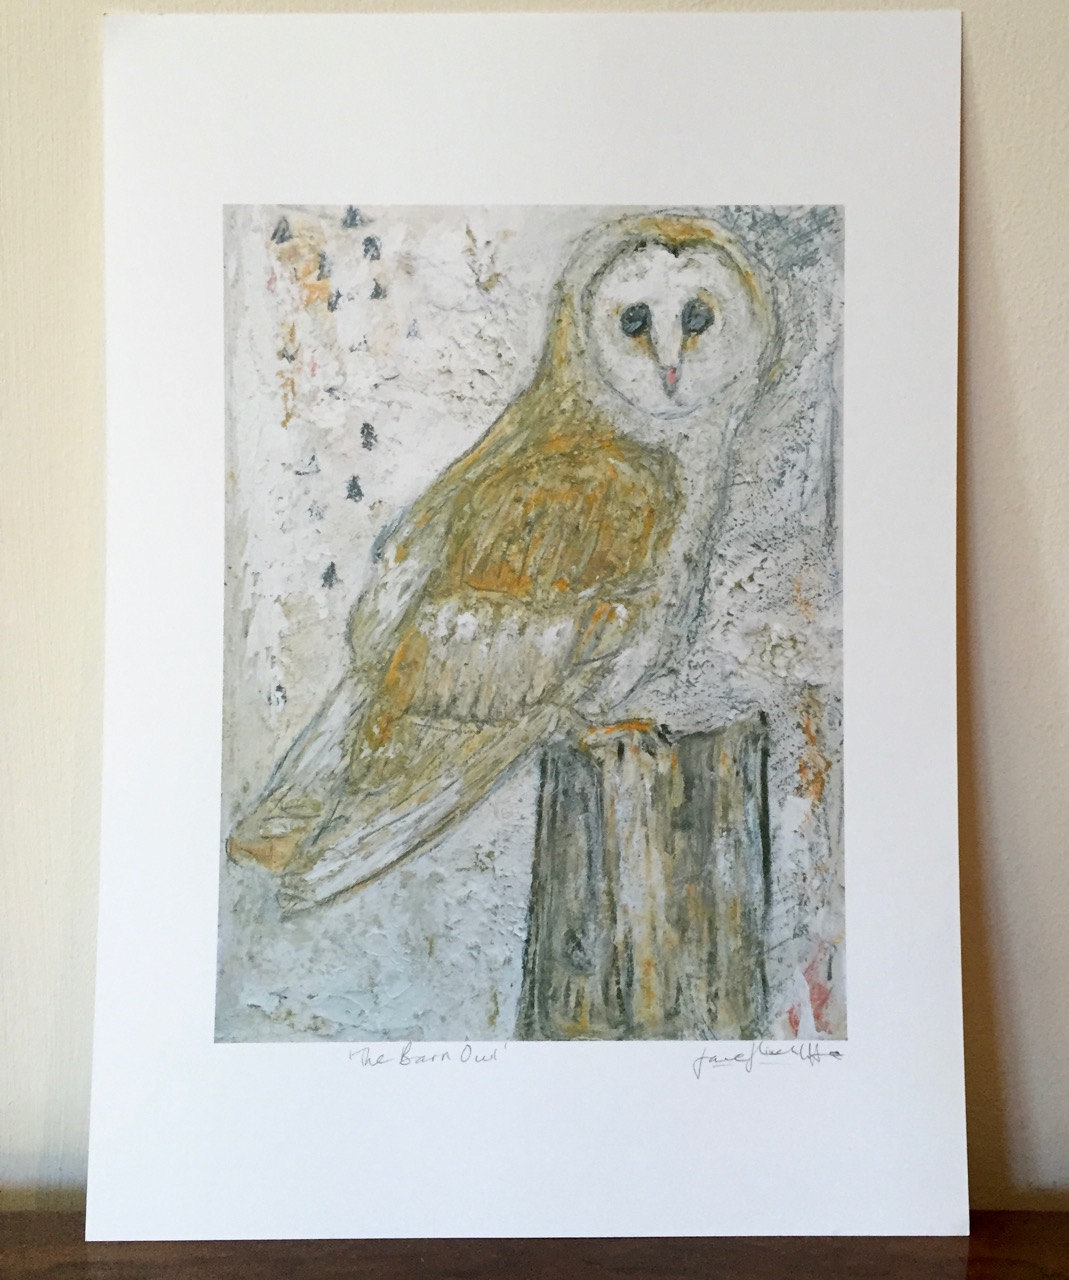 Outlook Ondartet tumor span The Barn Owl - A4 Fine Art Print - UK artist, owl, barn owl, nature, birds,  wall art, framed art - Jane Hinchliffe